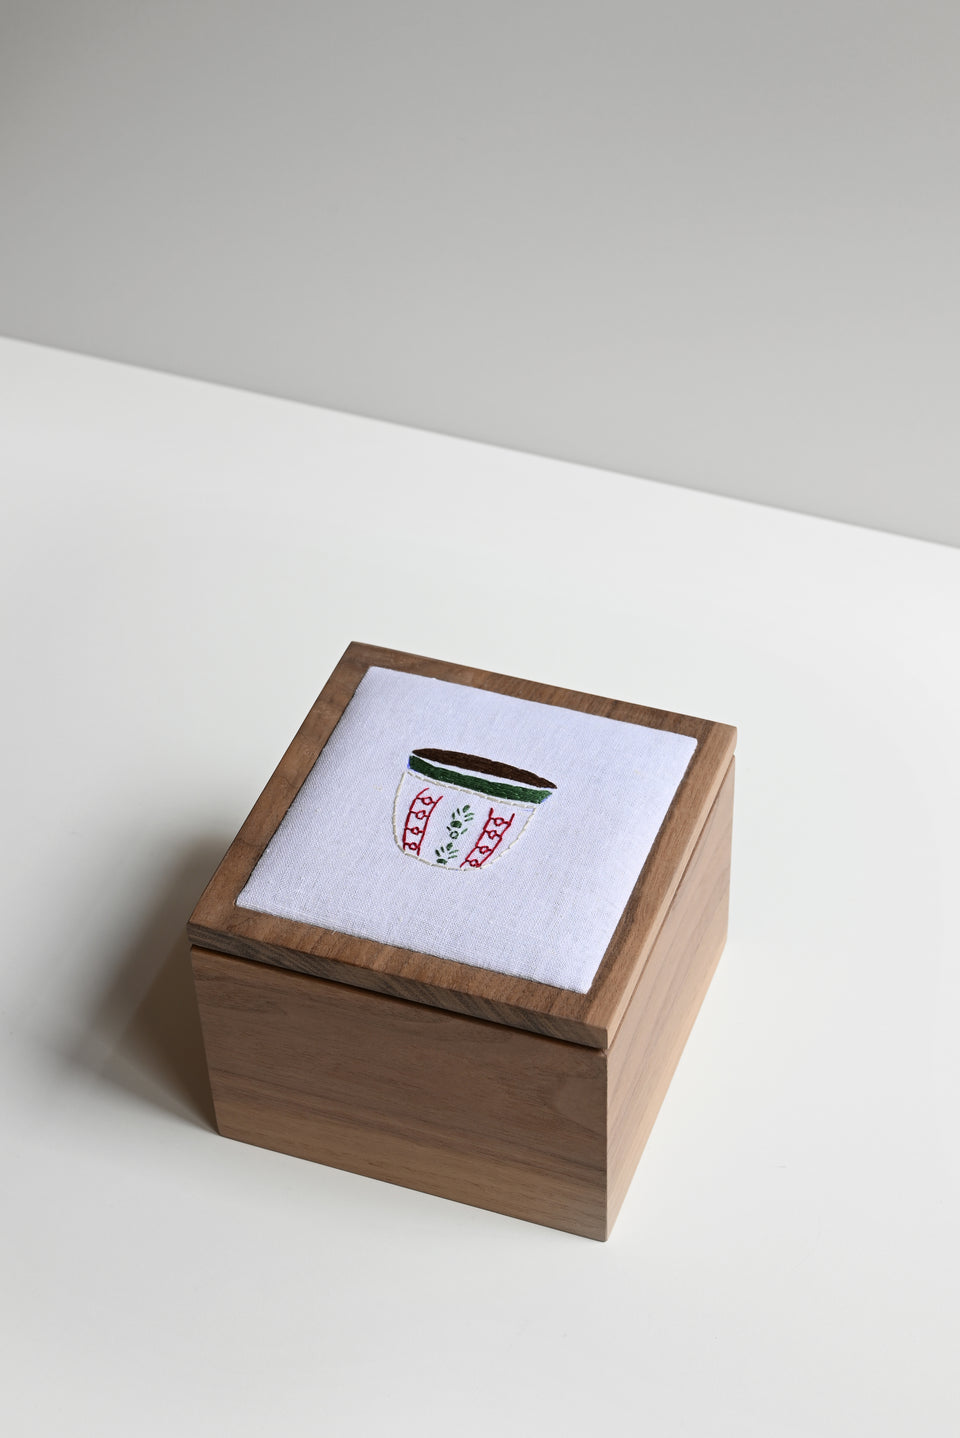 Saudi Culture Box - Concept 42